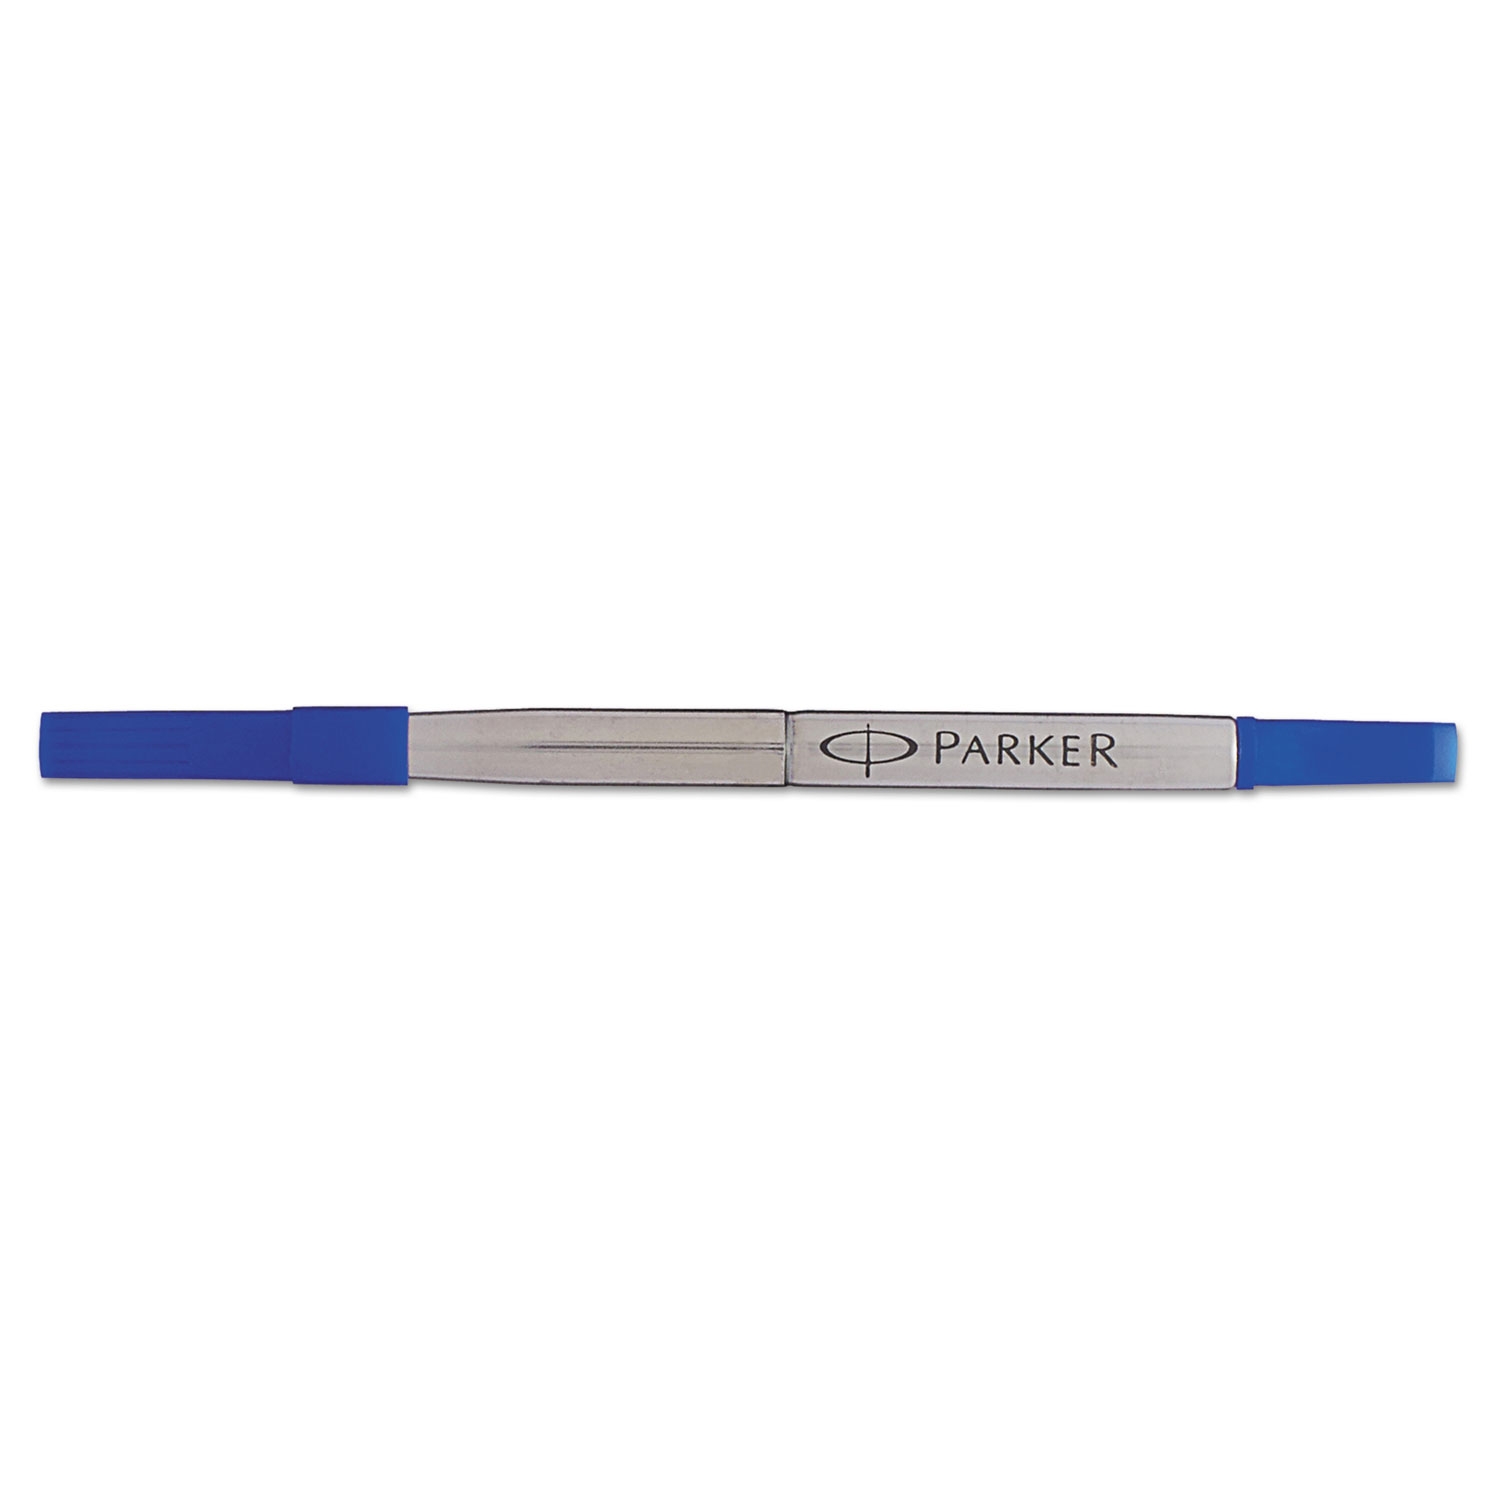 Refill for Roller Ball Pens, Medium, Blue Ink